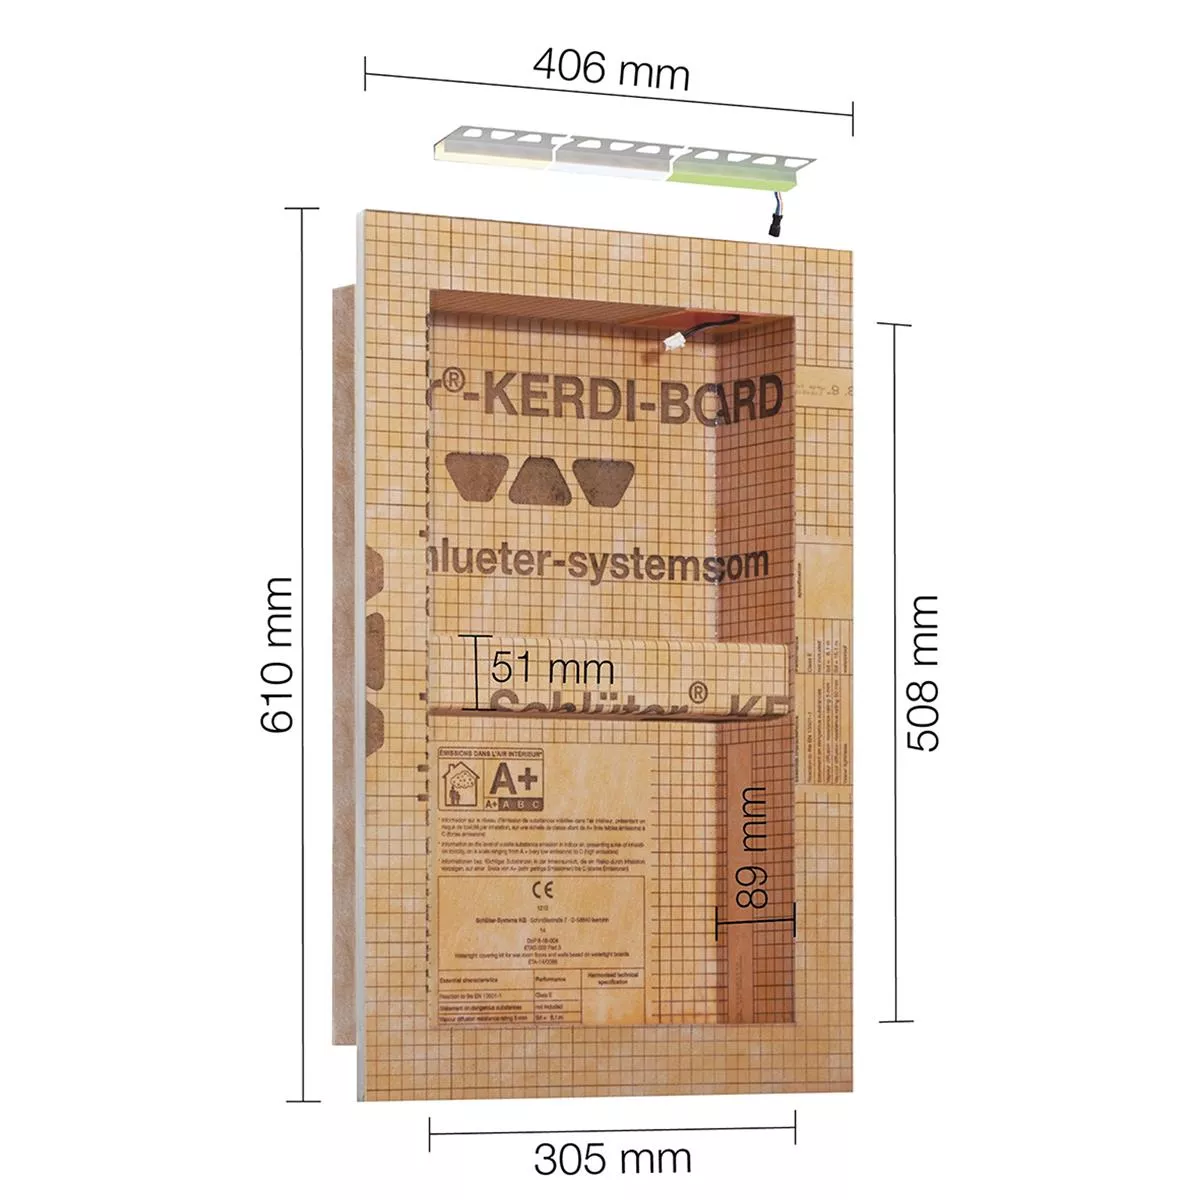 Schlüter Kerdi Board NLT ensemble de niches éclairage LED blanc chaud 30,5x50,8x0,89 cm